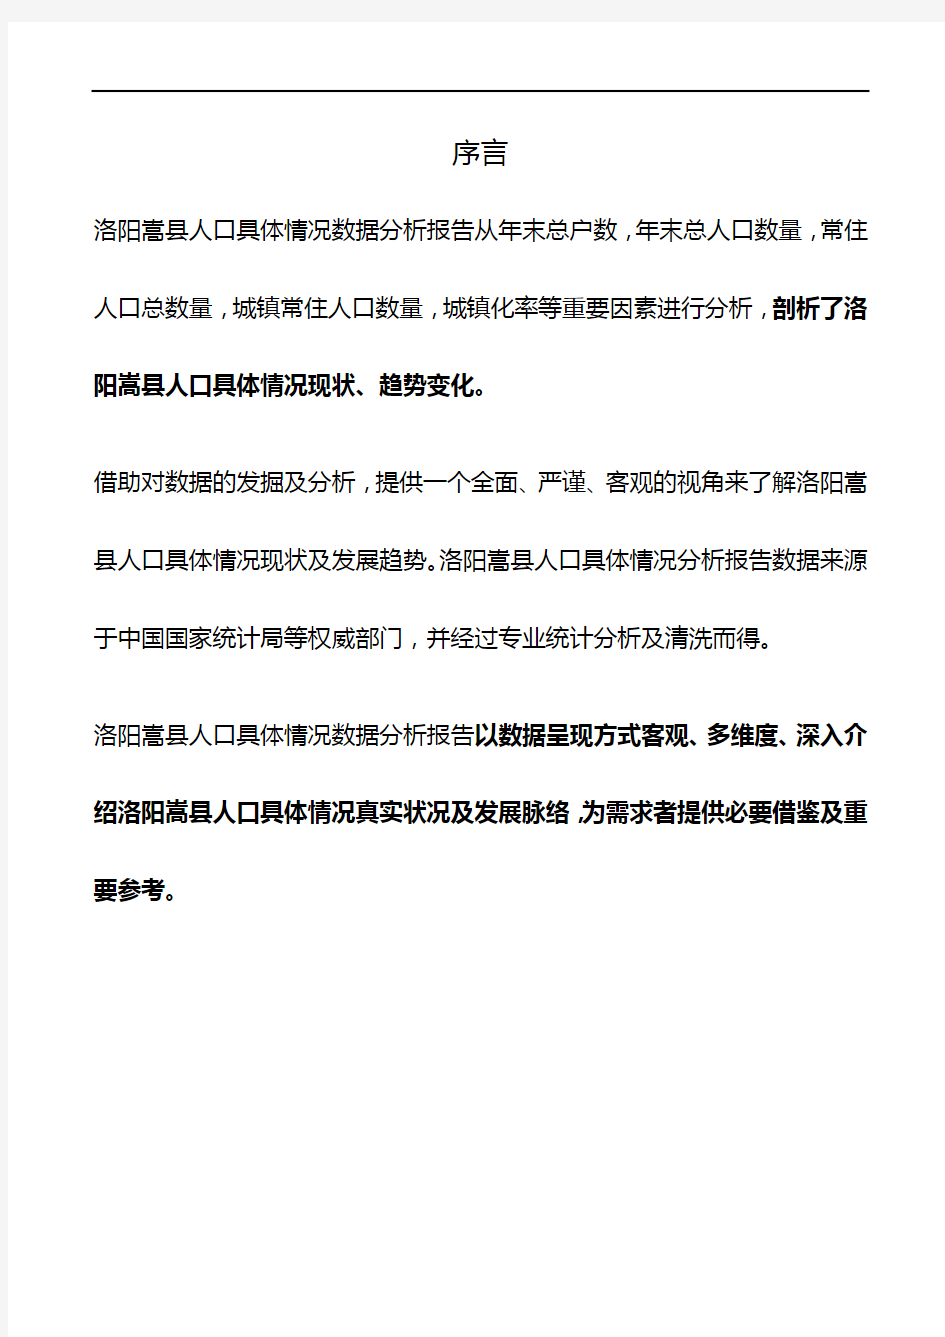 河南省洛阳嵩县人口具体情况数据分析报告2019版